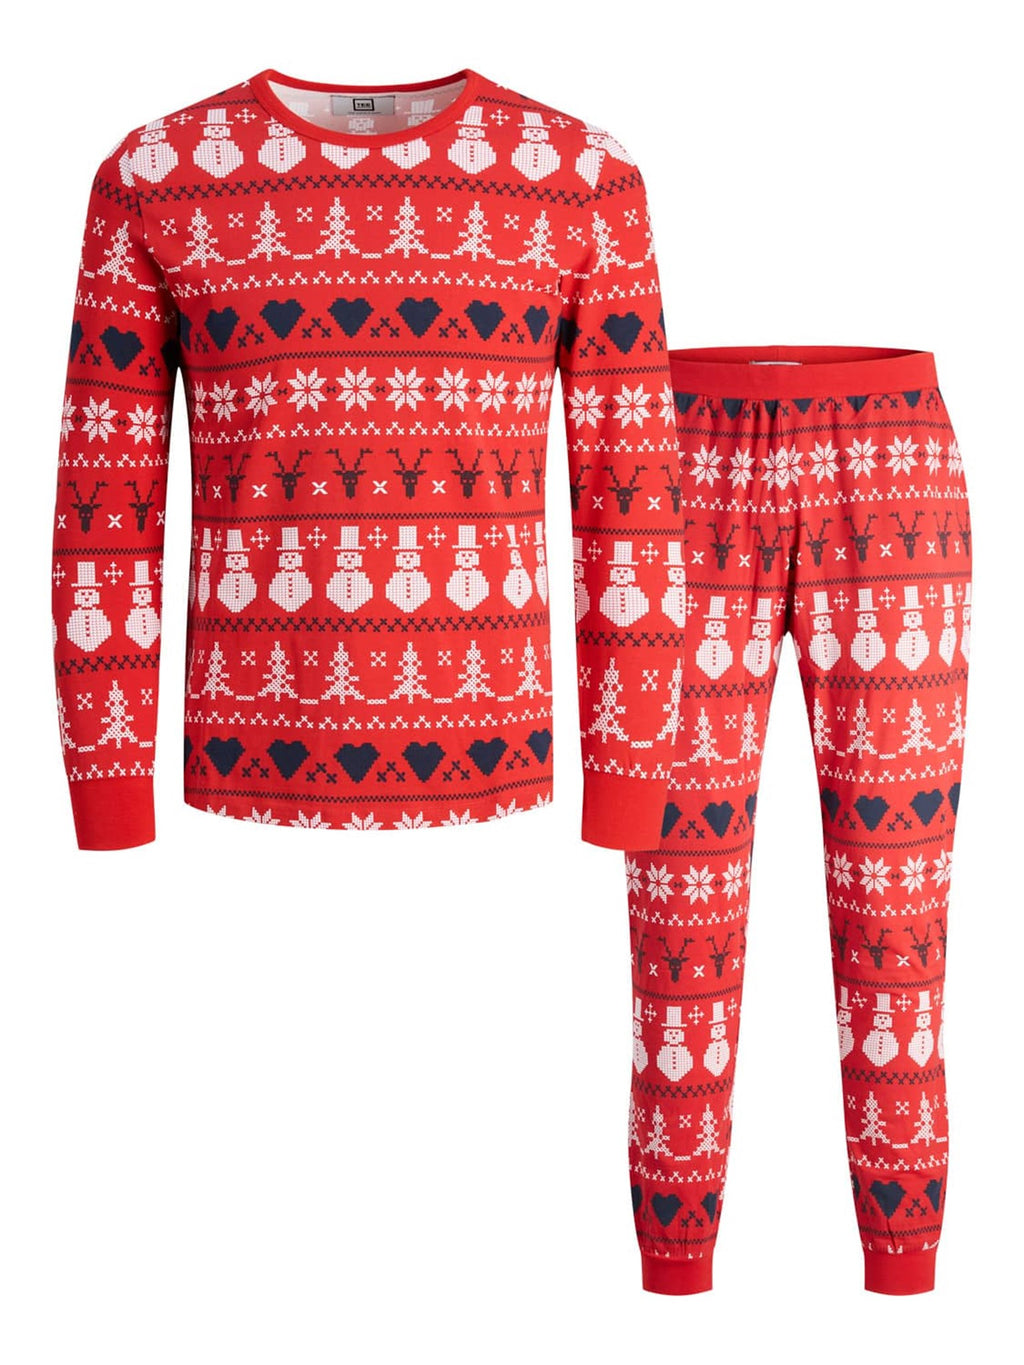 Snowflake Junior Pyjamas - Red